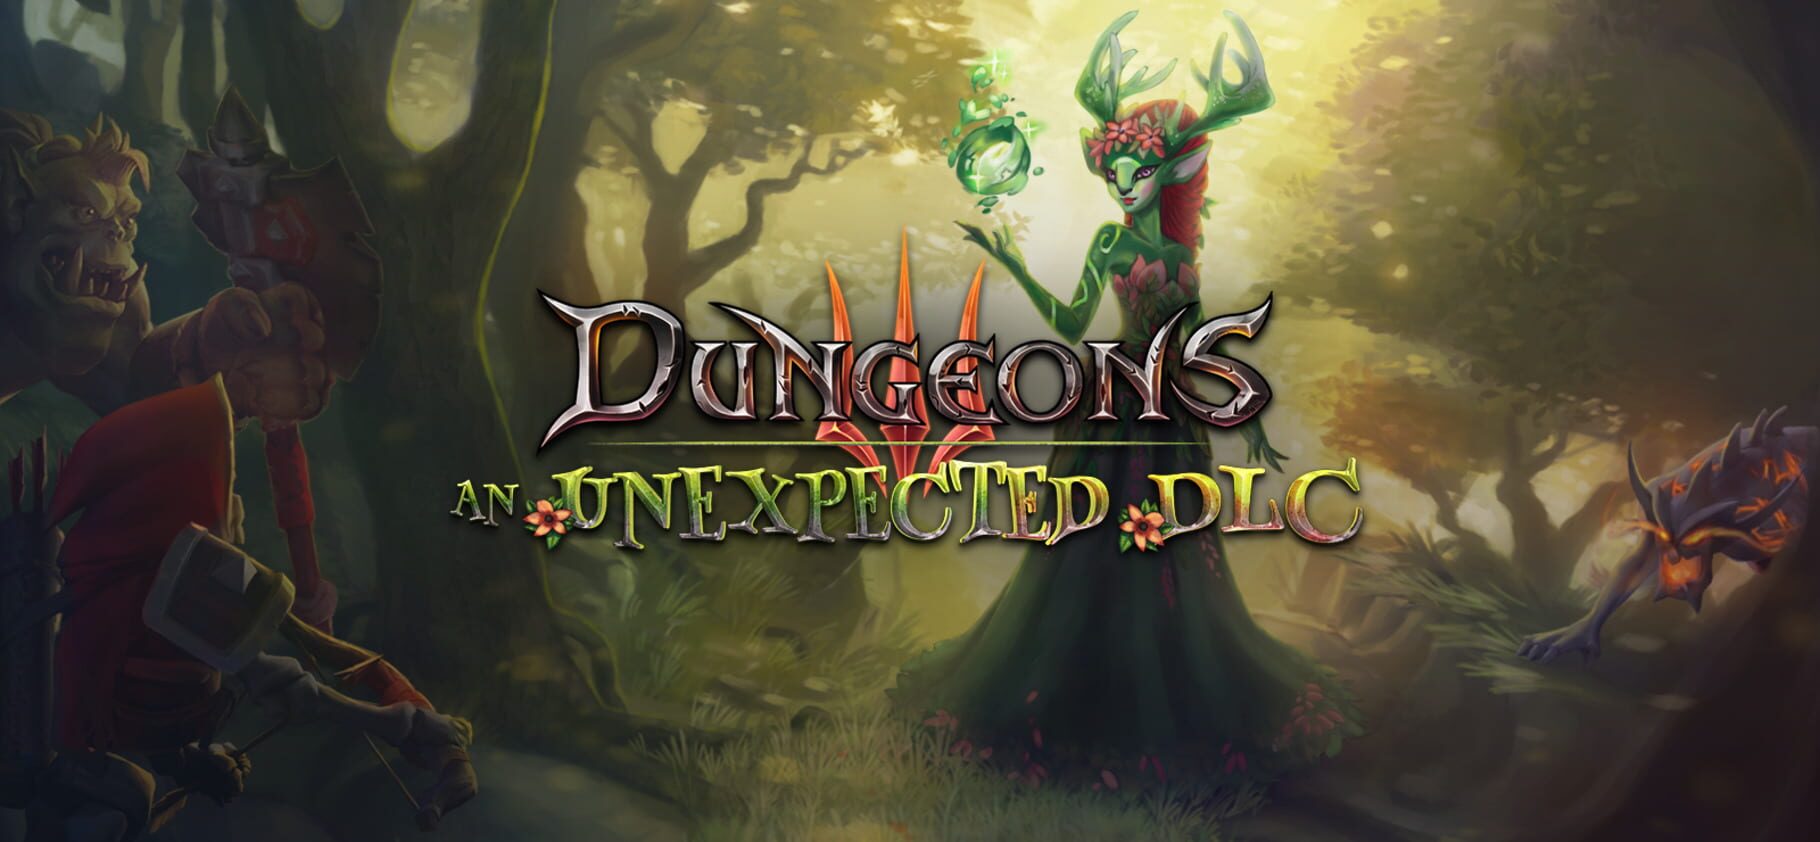 Dungeons 3: An Unexpected DLC artwork